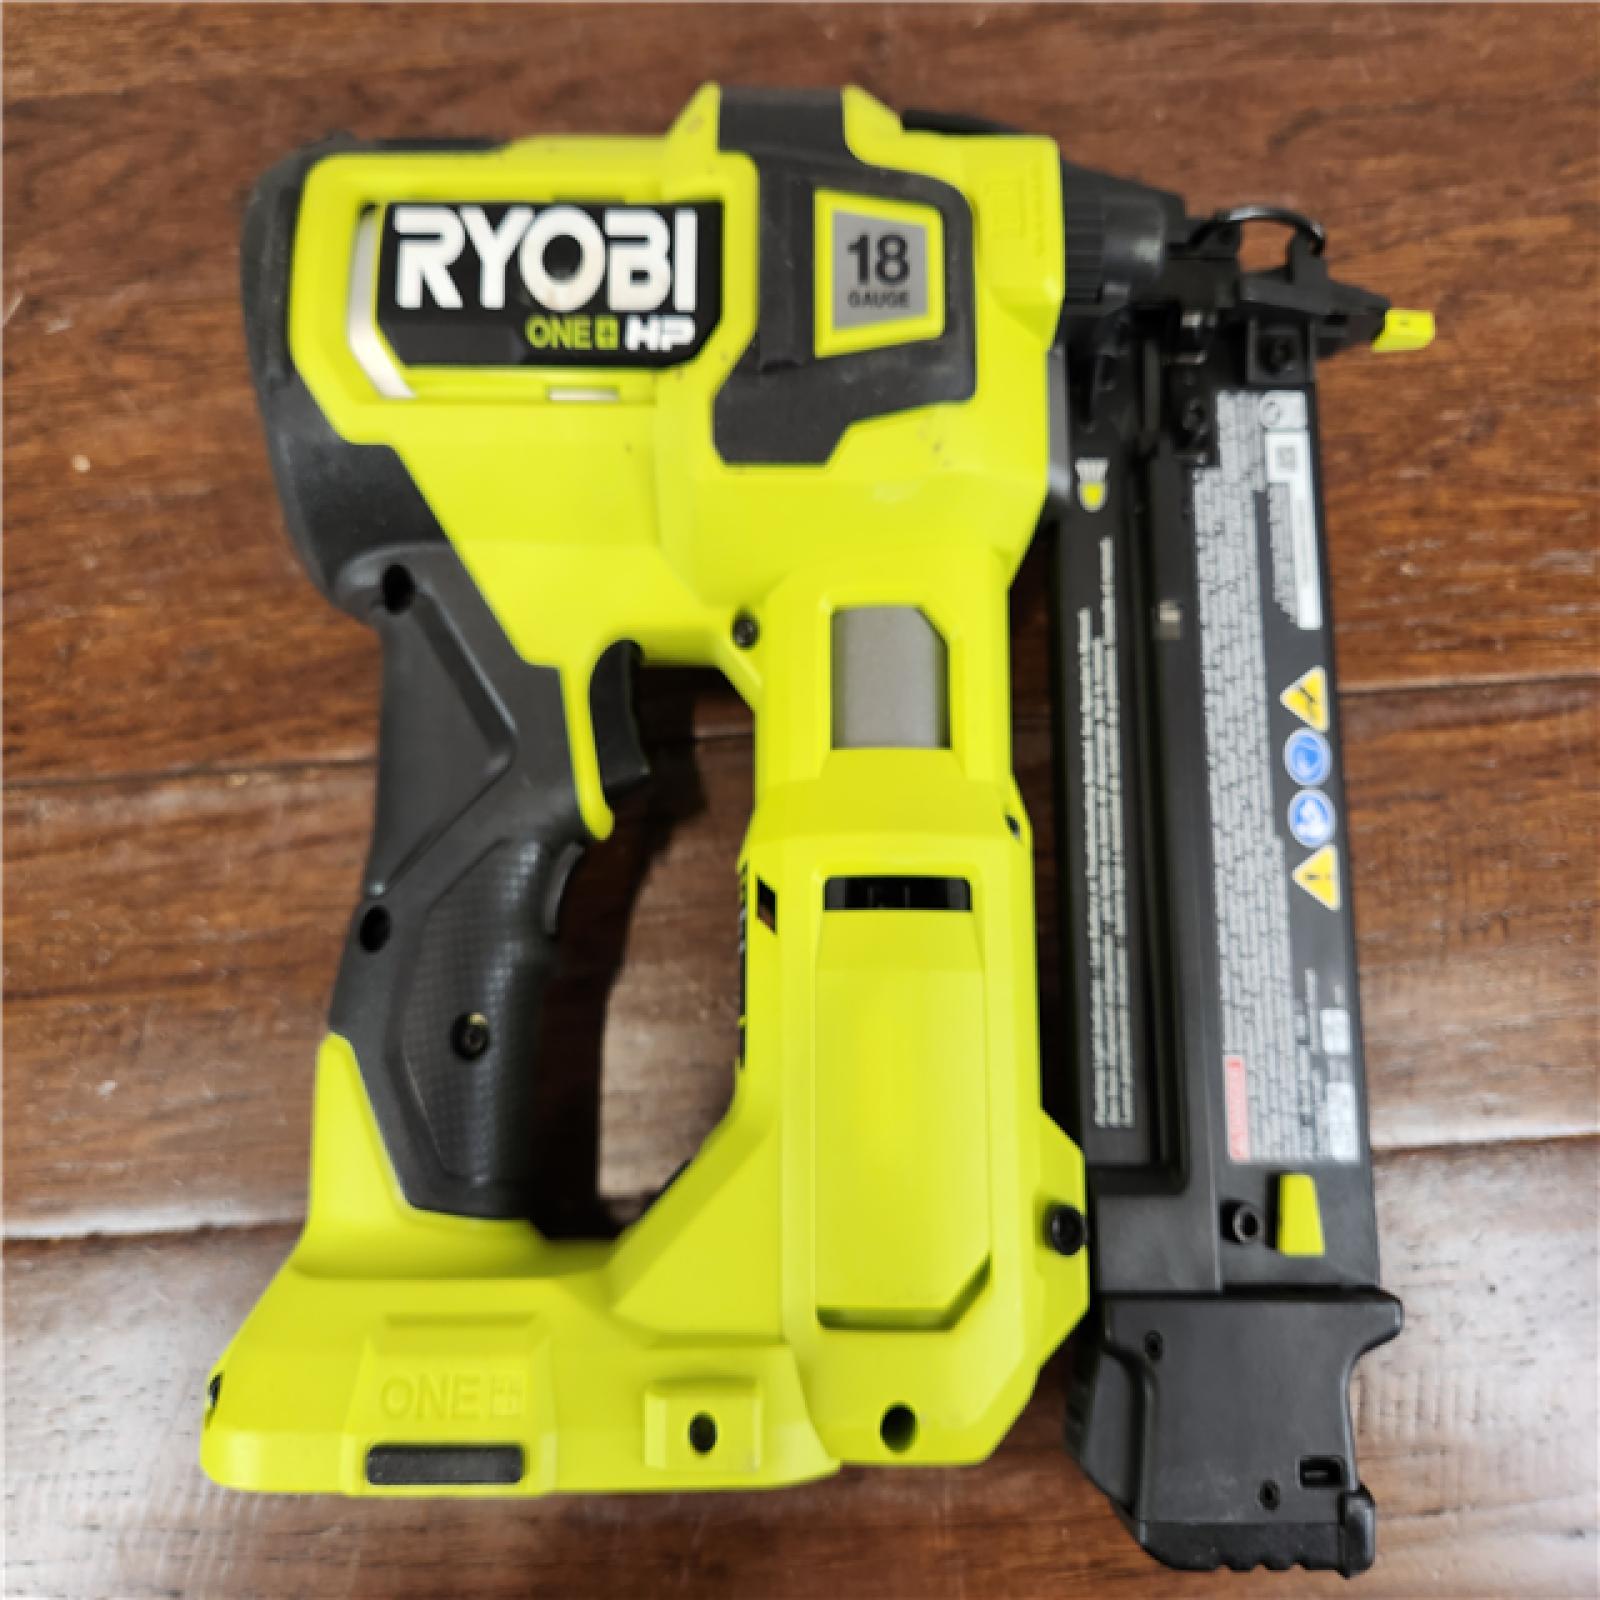 AS-IS RYOBI ONE+ HP 18V 18-Gauge Brushless Cordless AirStrike Brad Nailer (Tool Only)